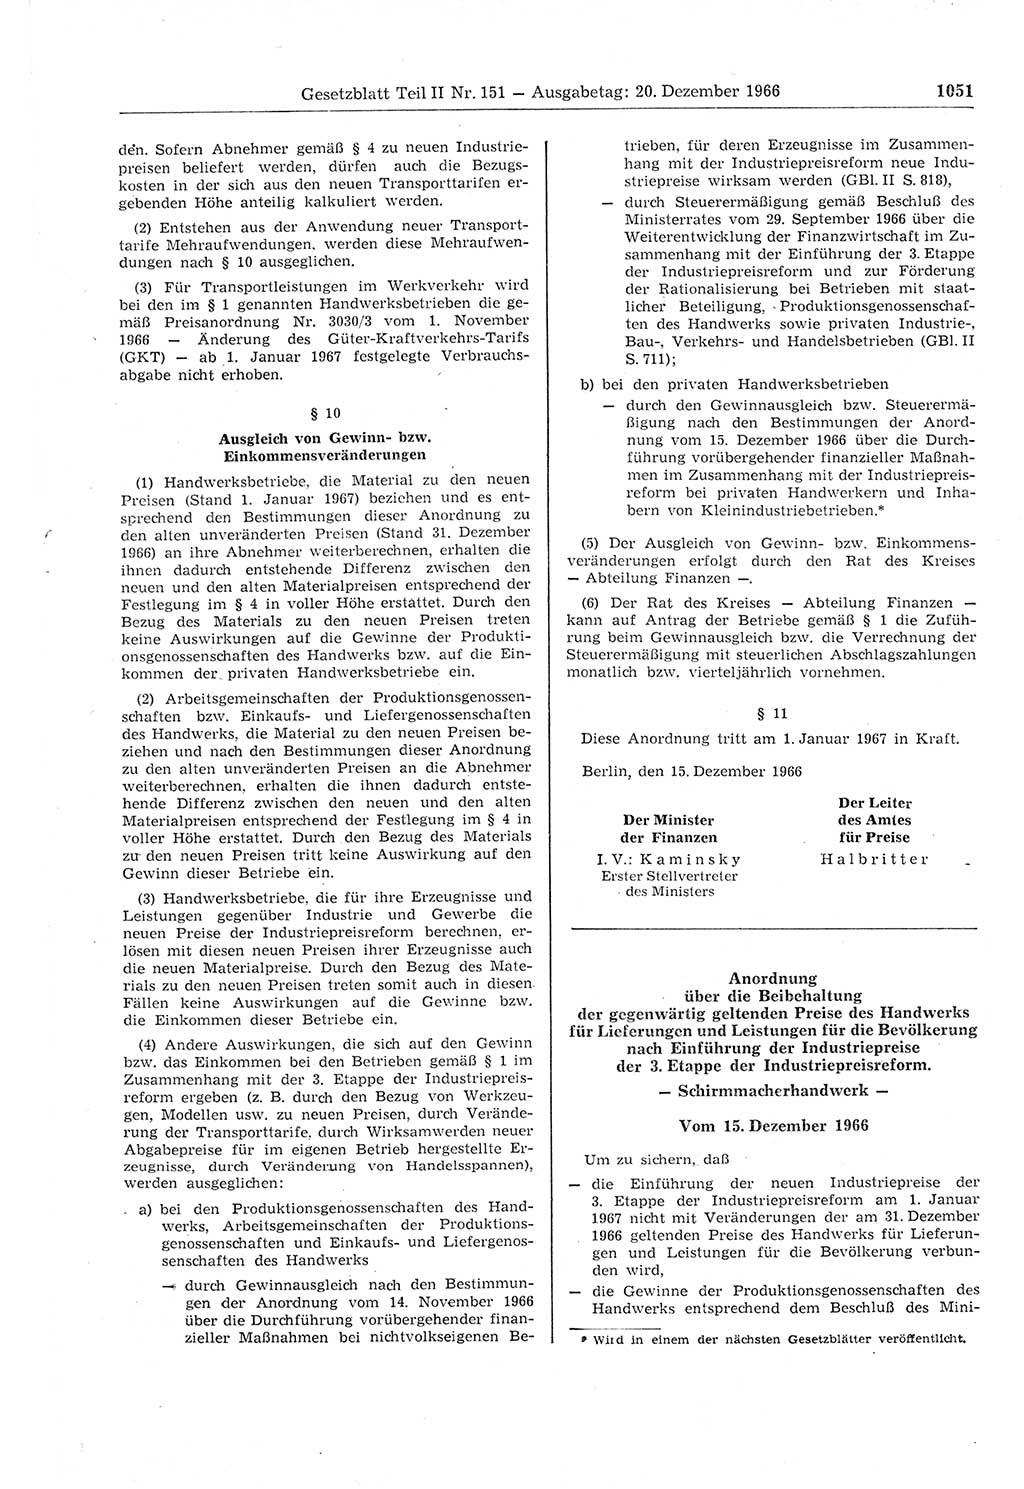 Gesetzblatt (GBl.) der Deutschen Demokratischen Republik (DDR) Teil ⅠⅠ 1966, Seite 1051 (GBl. DDR ⅠⅠ 1966, S. 1051)